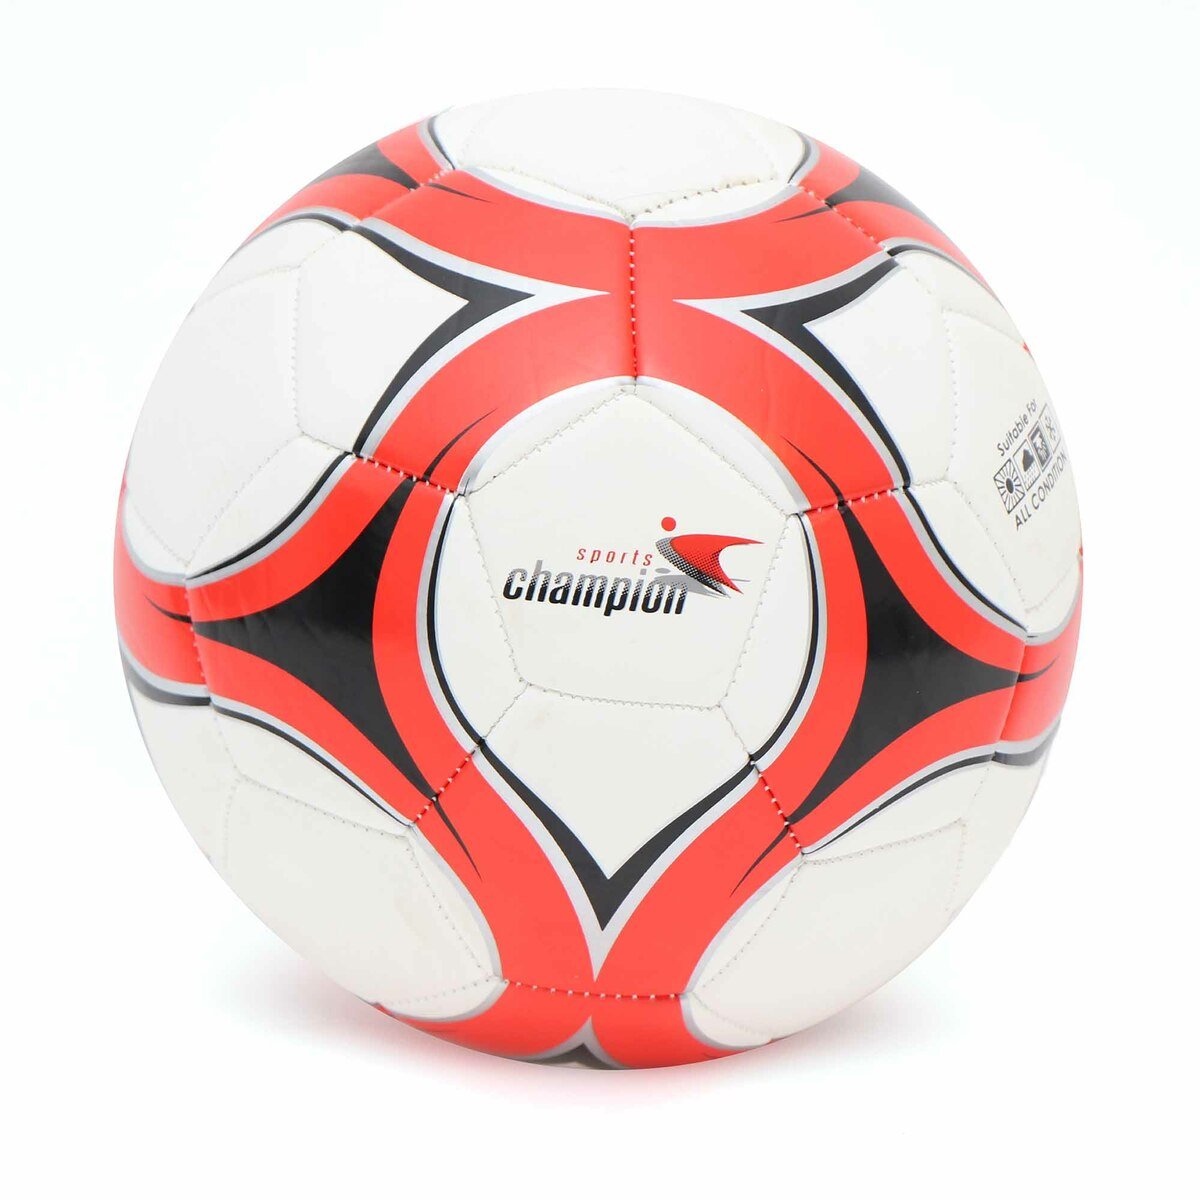 سبورتس شامبيون كرة قدم CR002 ألوان و تصاميم متنوعة